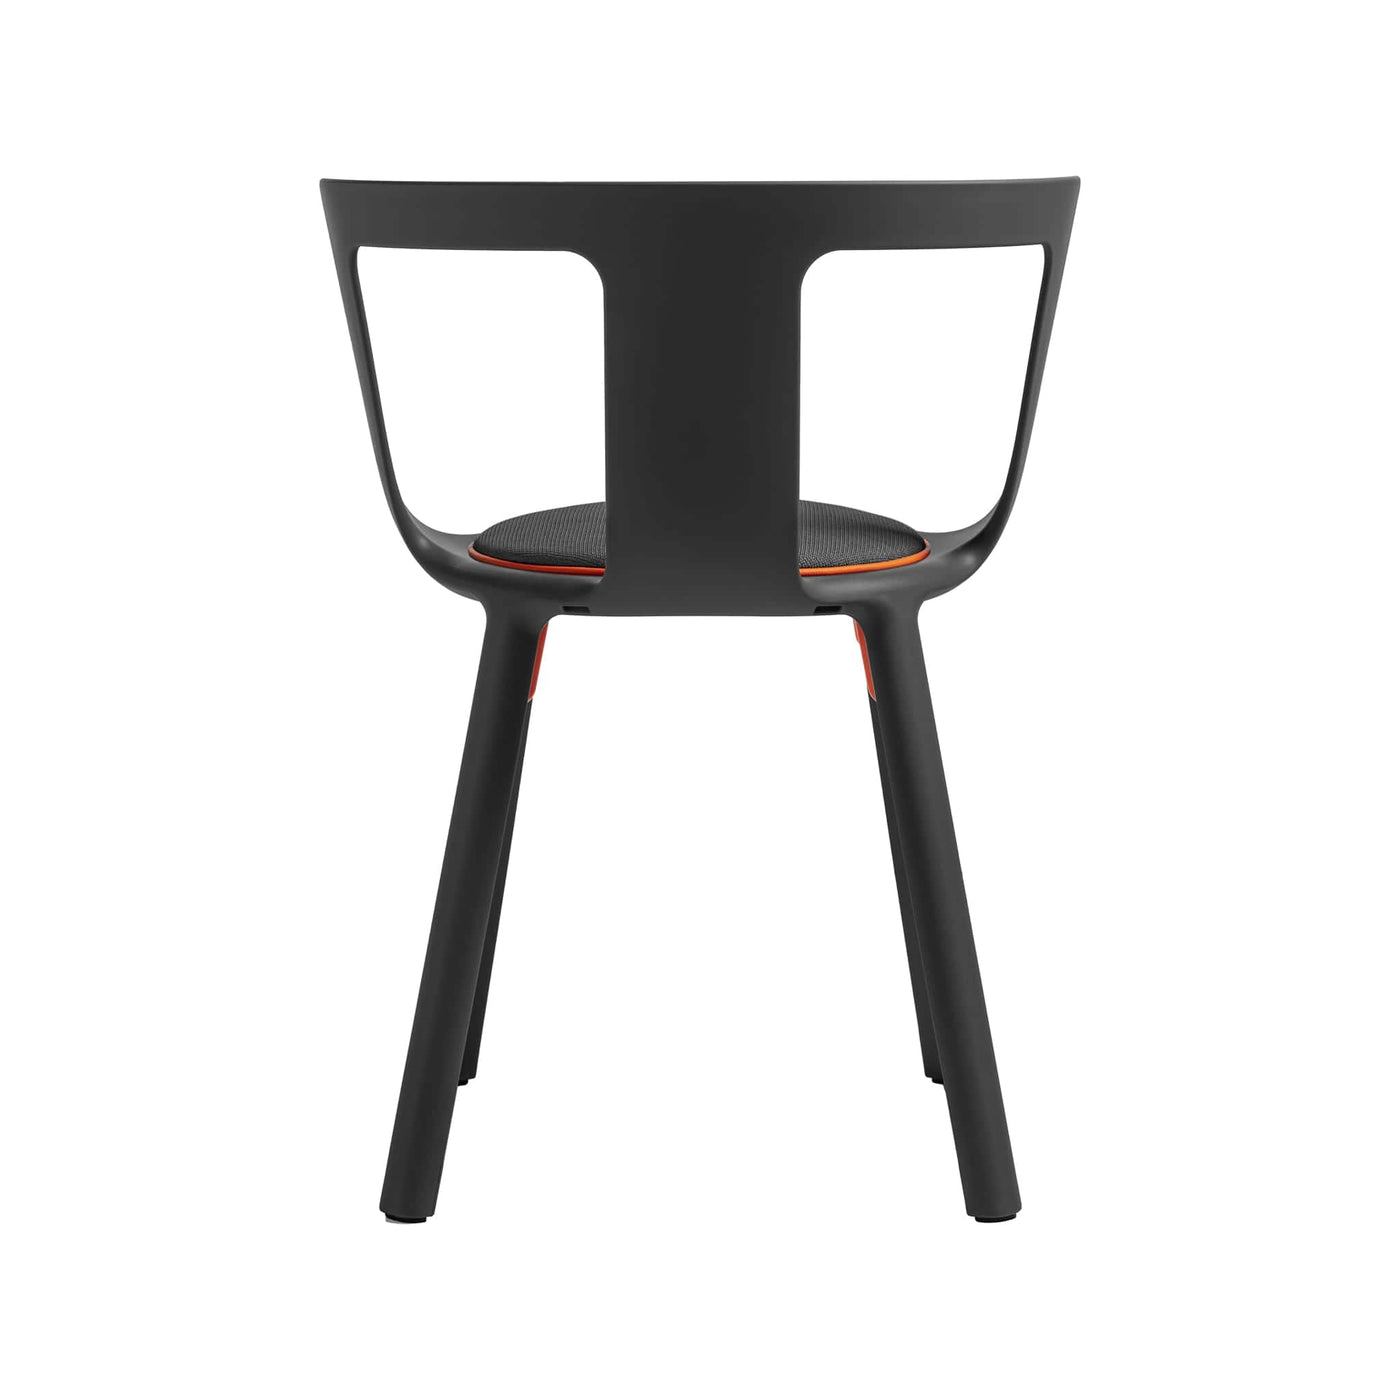 Explorez l'esthétique raffinée et minimaliste de la chaise FLA de TOOU, idéale pour s'intégrer harmonieusement à tout type d'environnement, des plus modernes aux plus classiques.